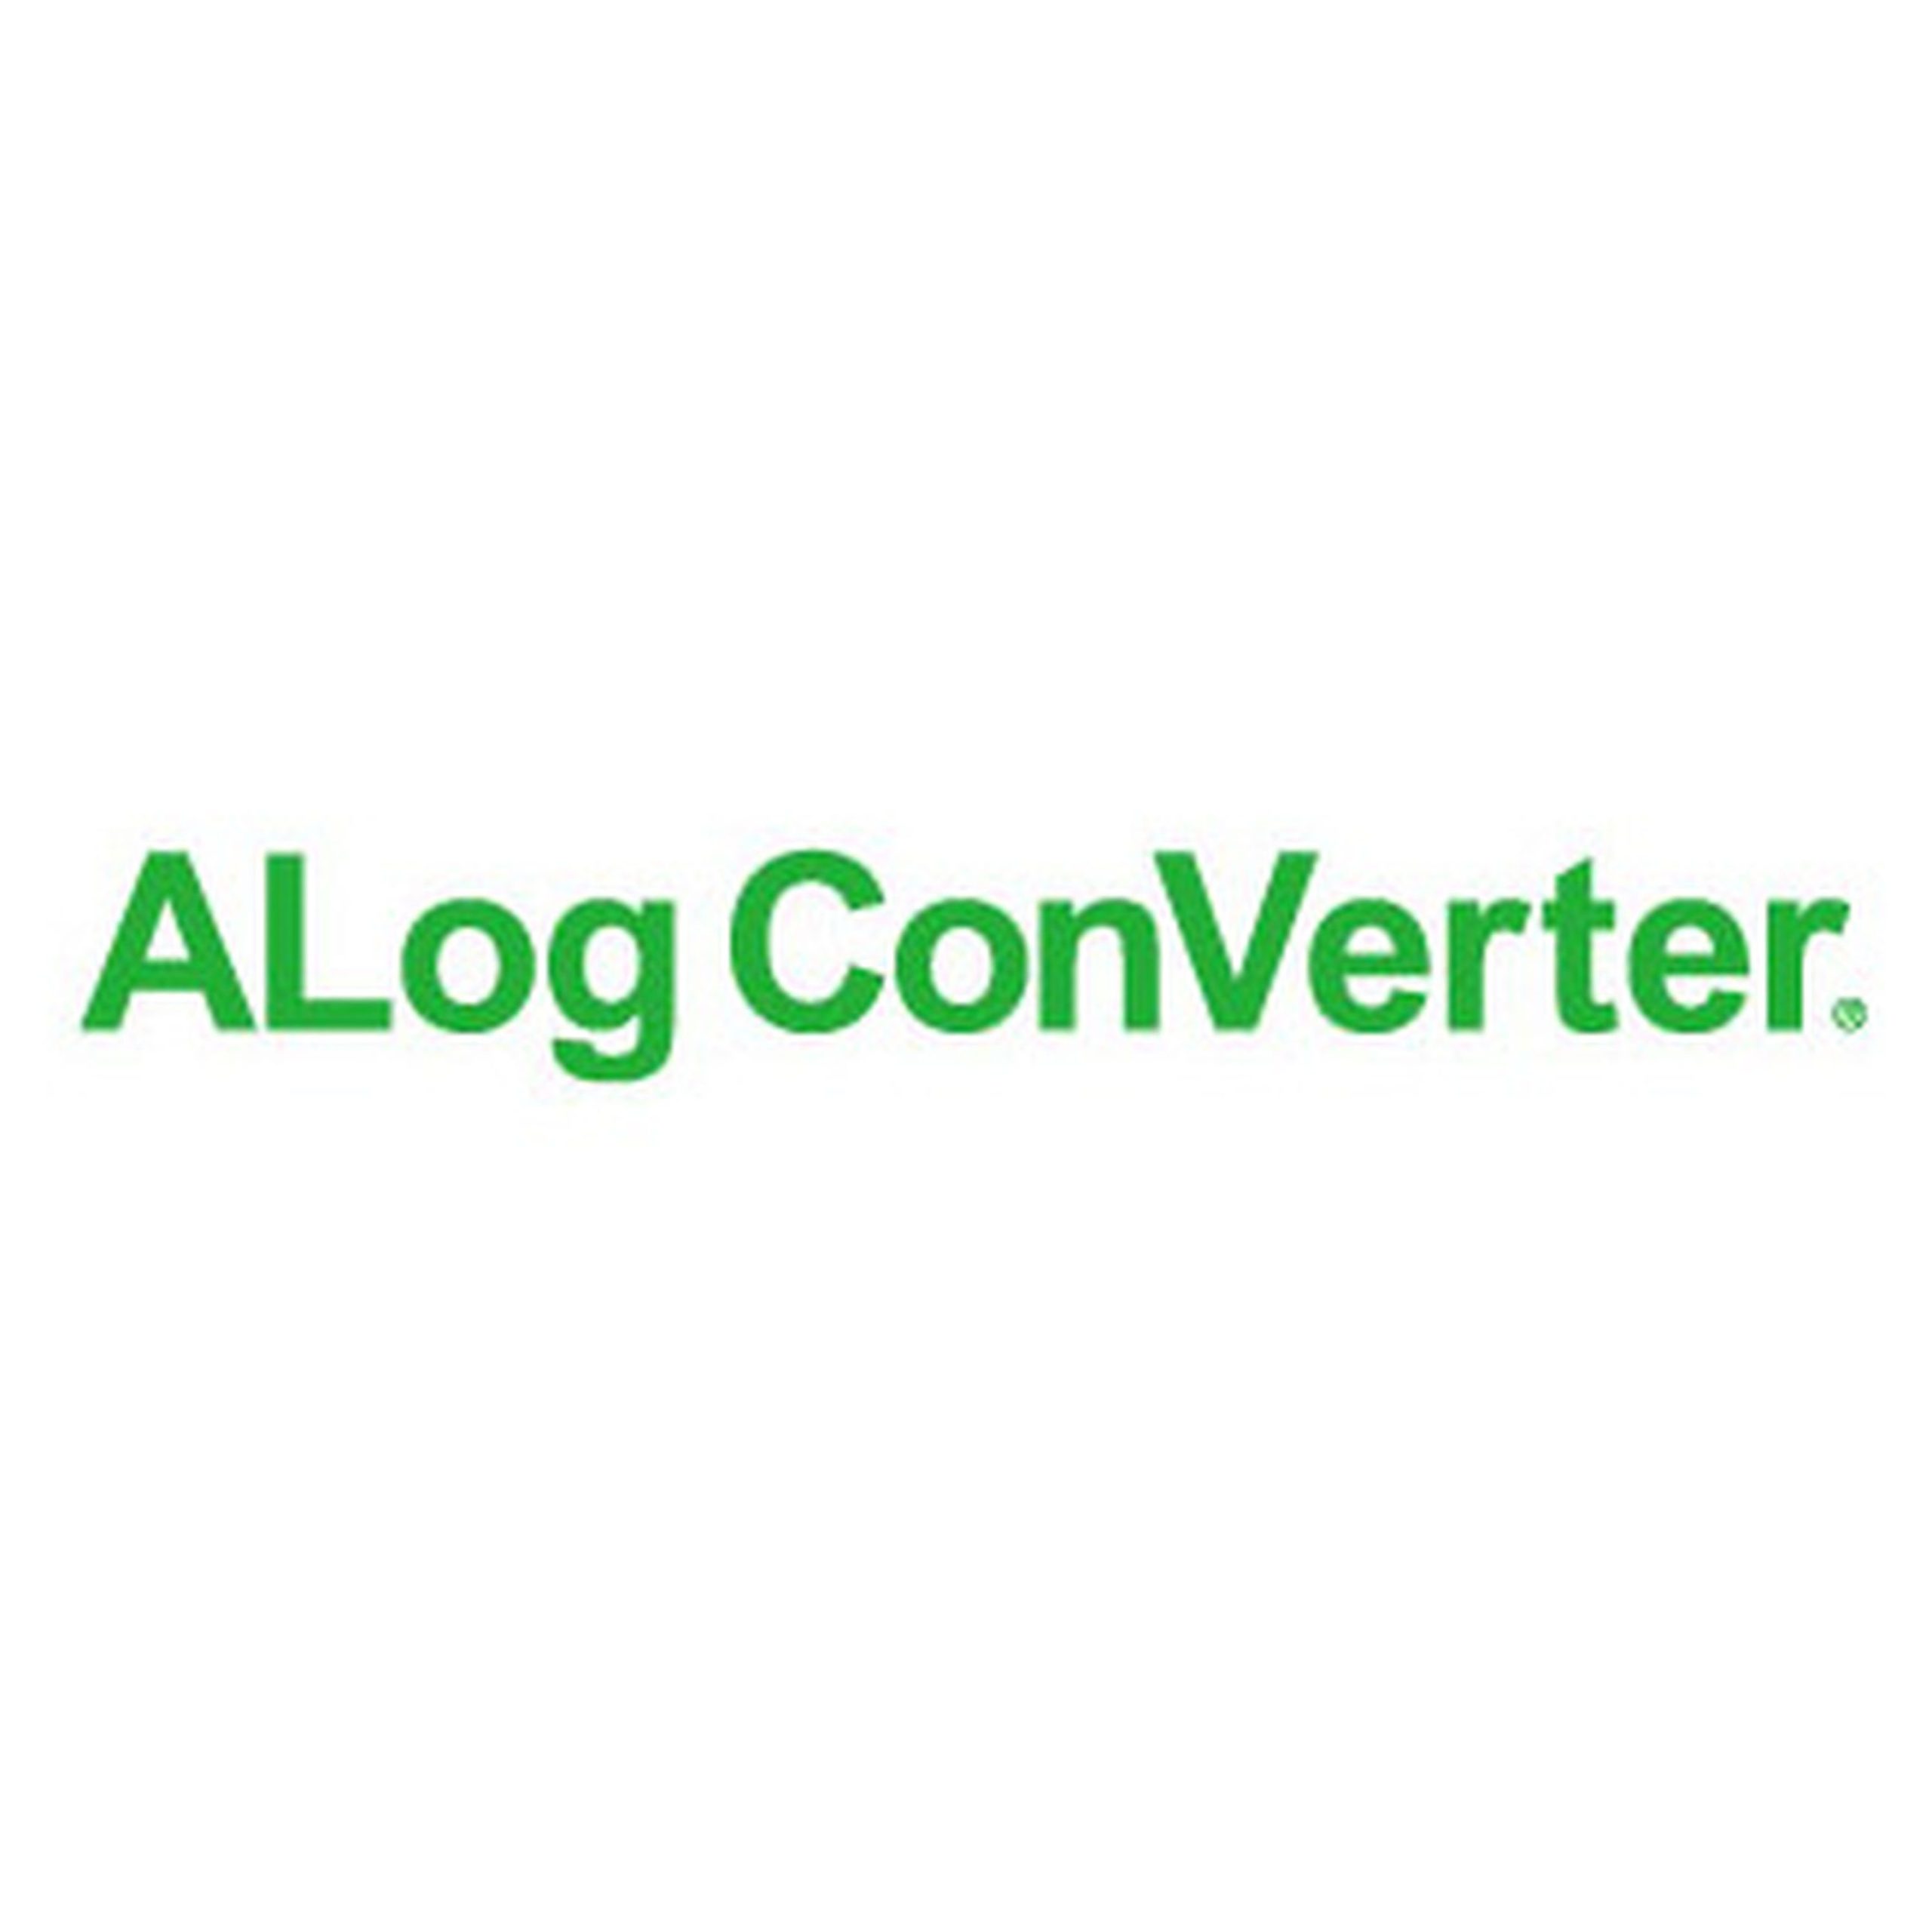 サーバー・DB用アクセスログ管理ツール ALog ConVerter